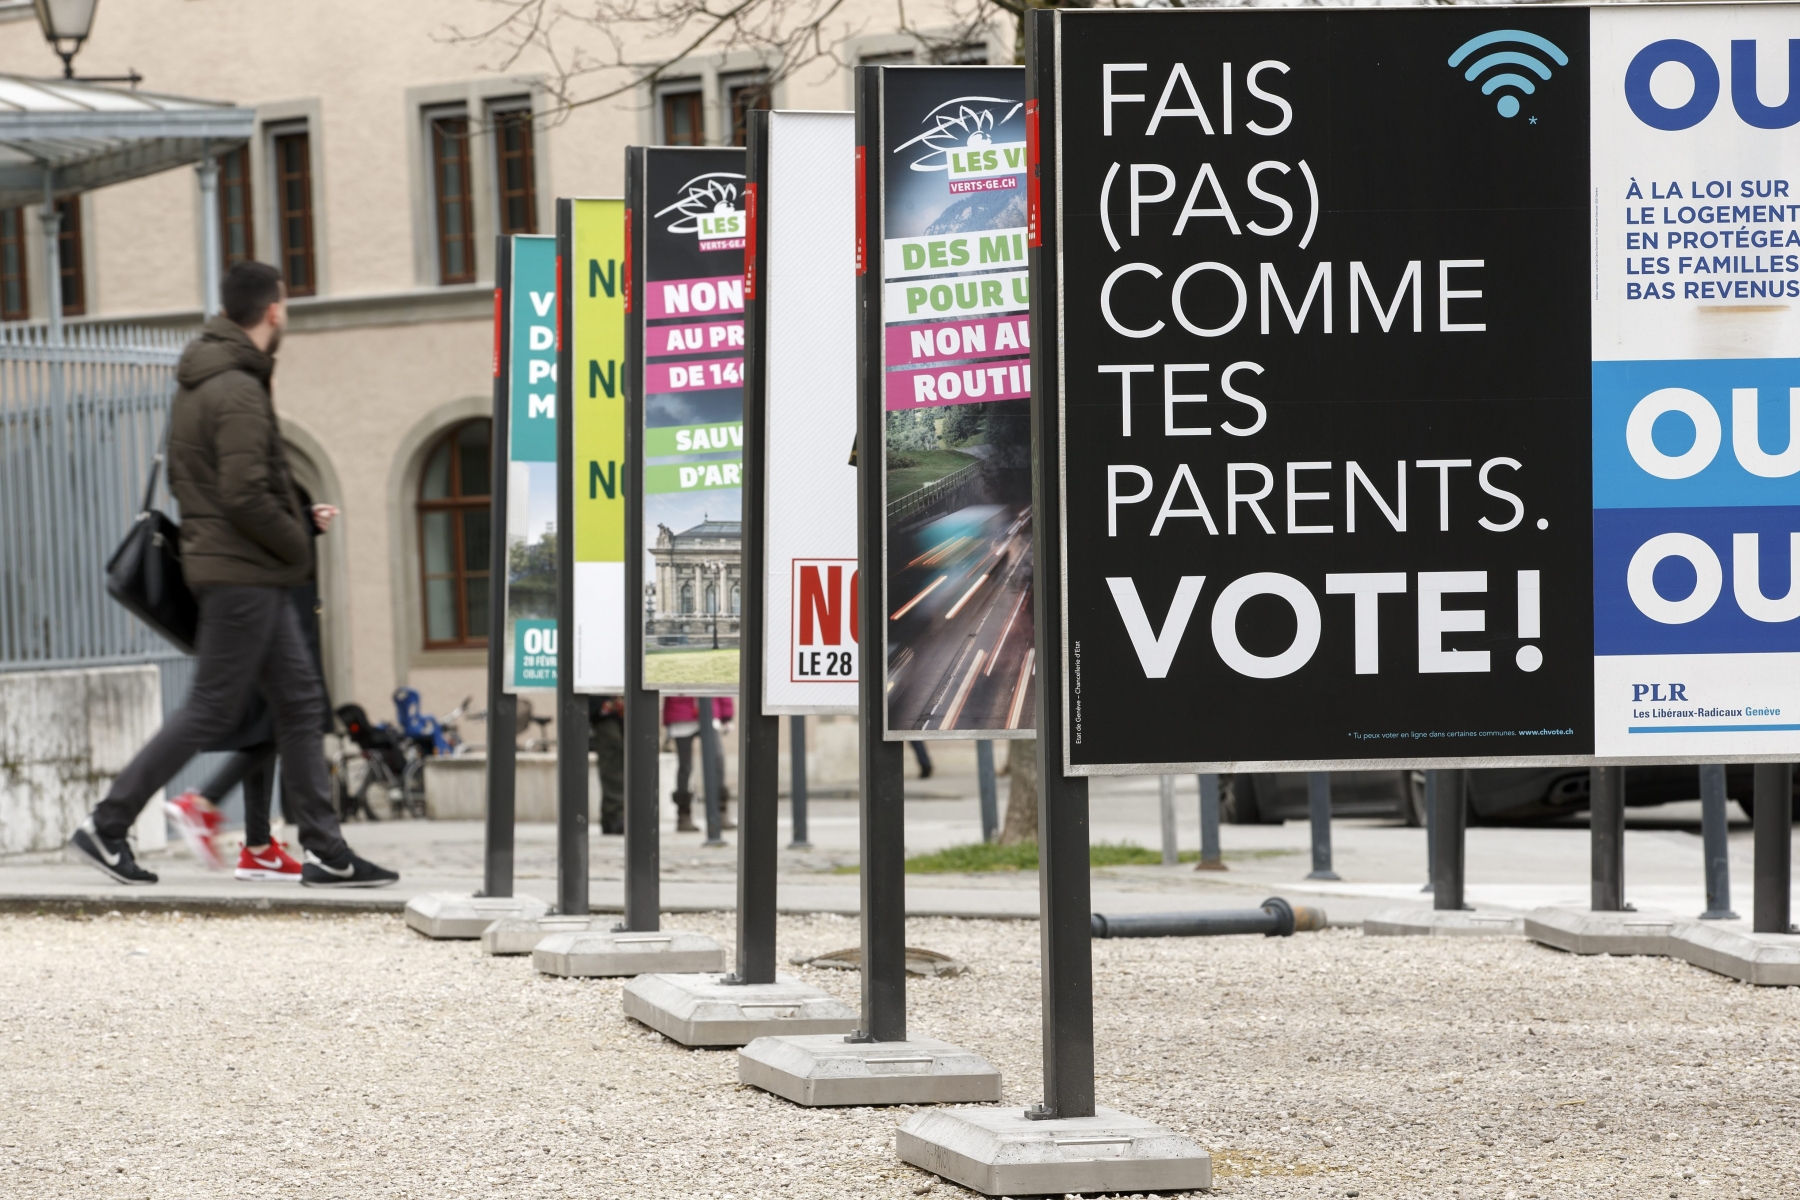 Des personnes passent vers l'affiche "Fais (pas) comme des parents. Vote!" du Conseil d'Etat genevois, et d'autres affiches concernant les votations du 28 fevrier, ce mercredi 24 fevrier 2016 a Geneve. Le Conseil d'Etat genevois a fait placarder des affiches pour incite les jeunes a voter. (KEYSTONE/Salvatore Di Nolfi)